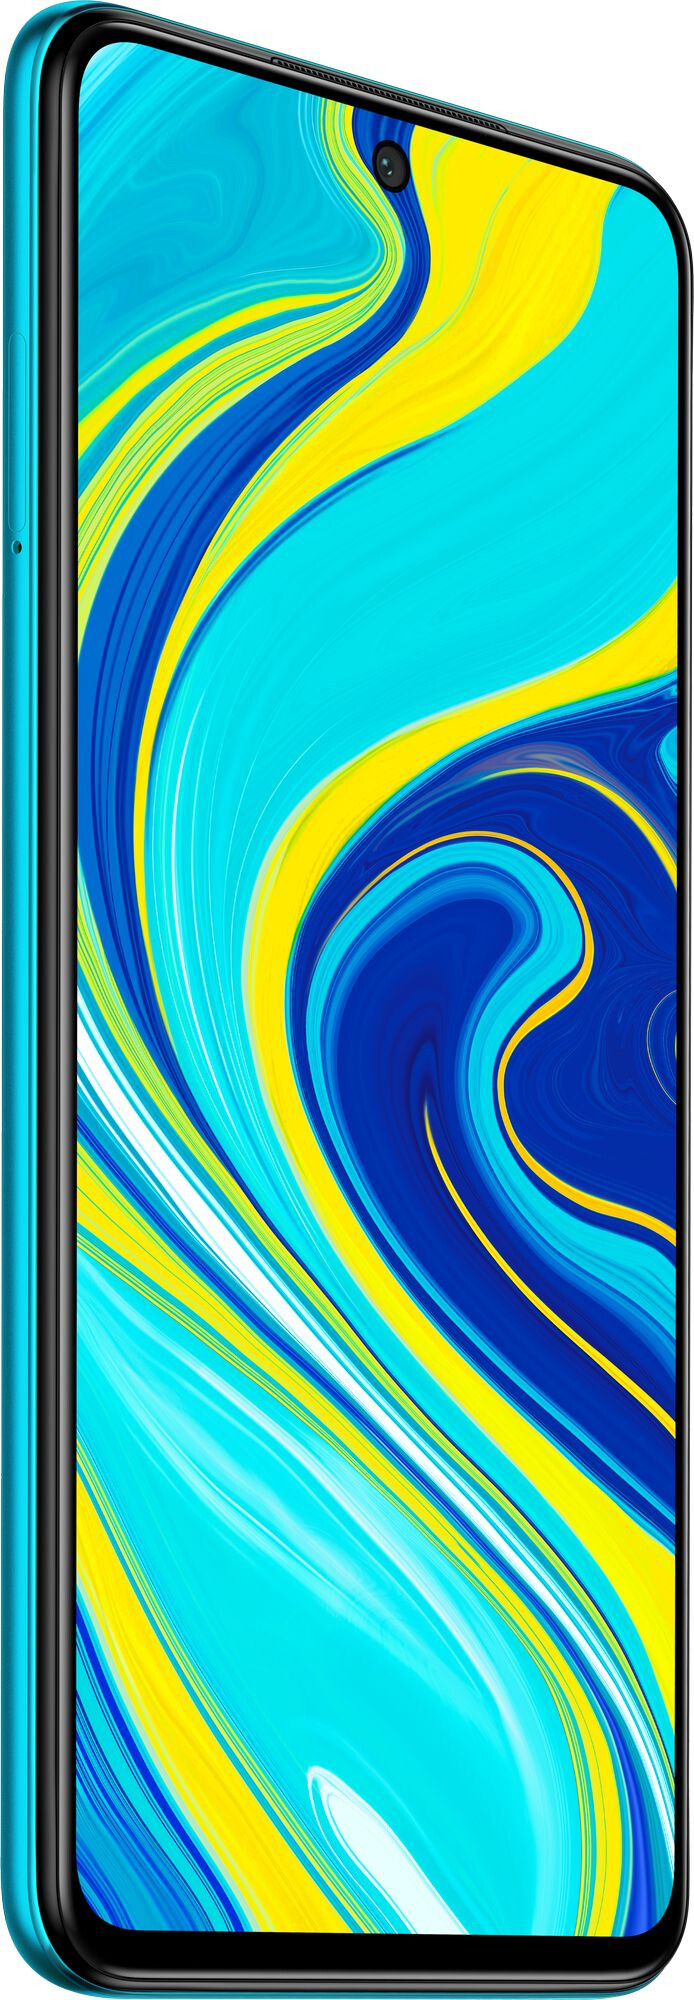 Смартфон Xiaomi Redmi Note 9S 4/64GB Aurora Blue (Синий) EU